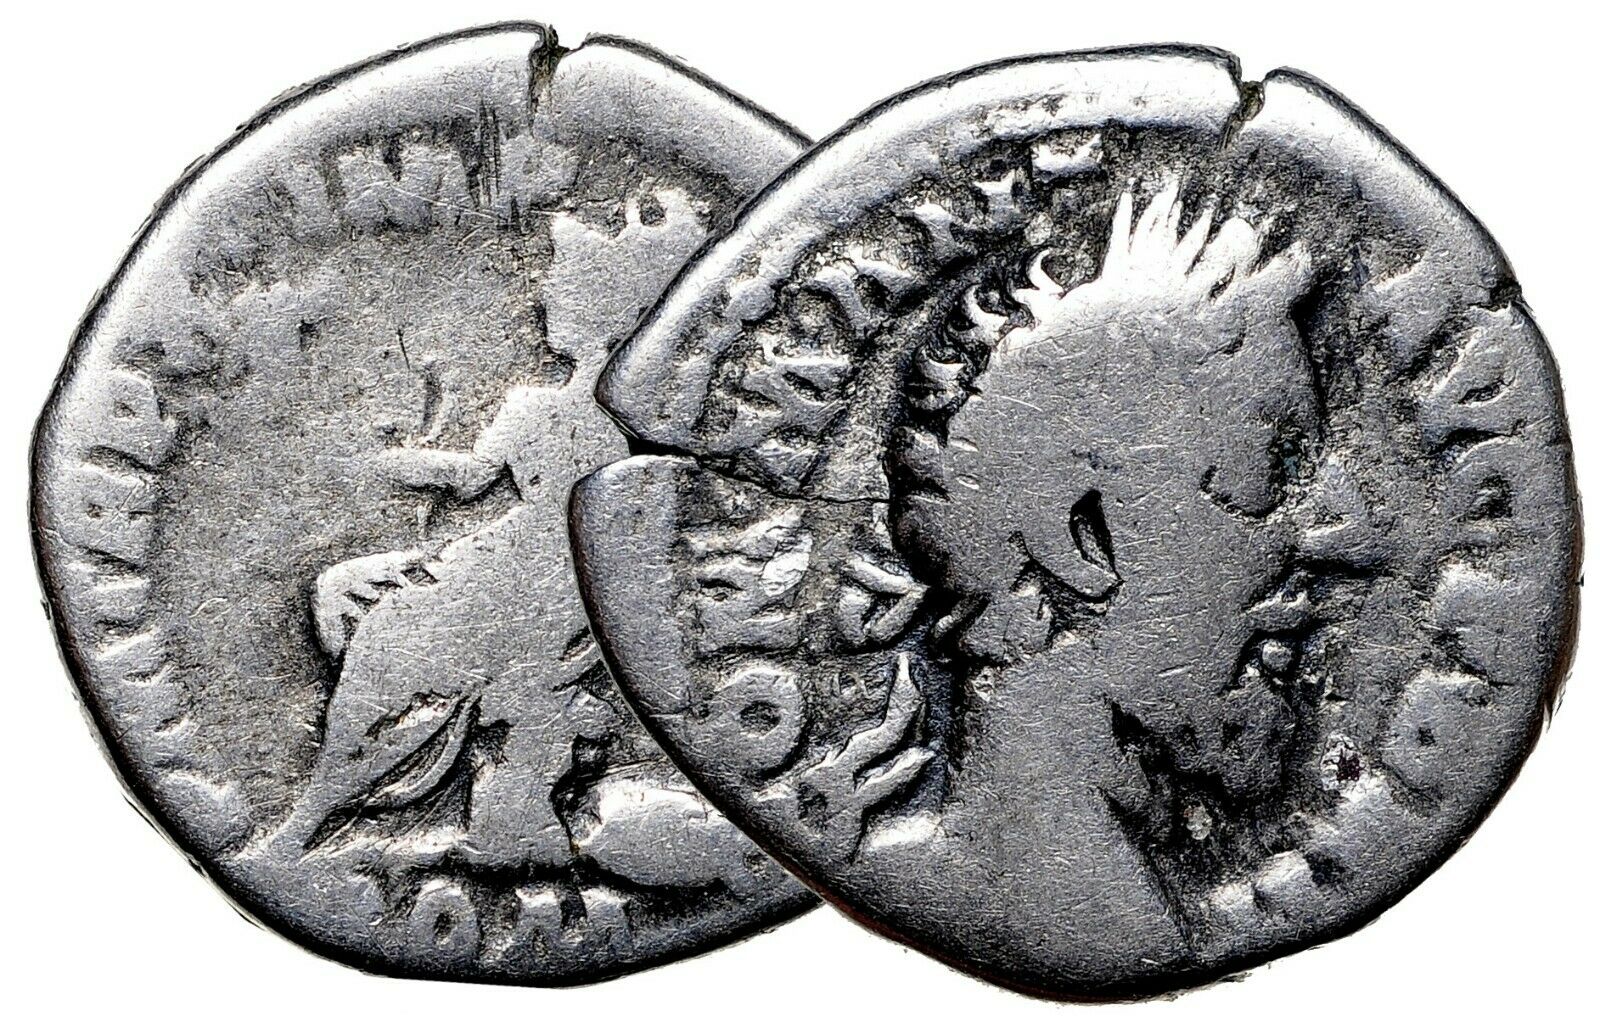 Ukraine - Commodus denarius Sep 2021.jpg